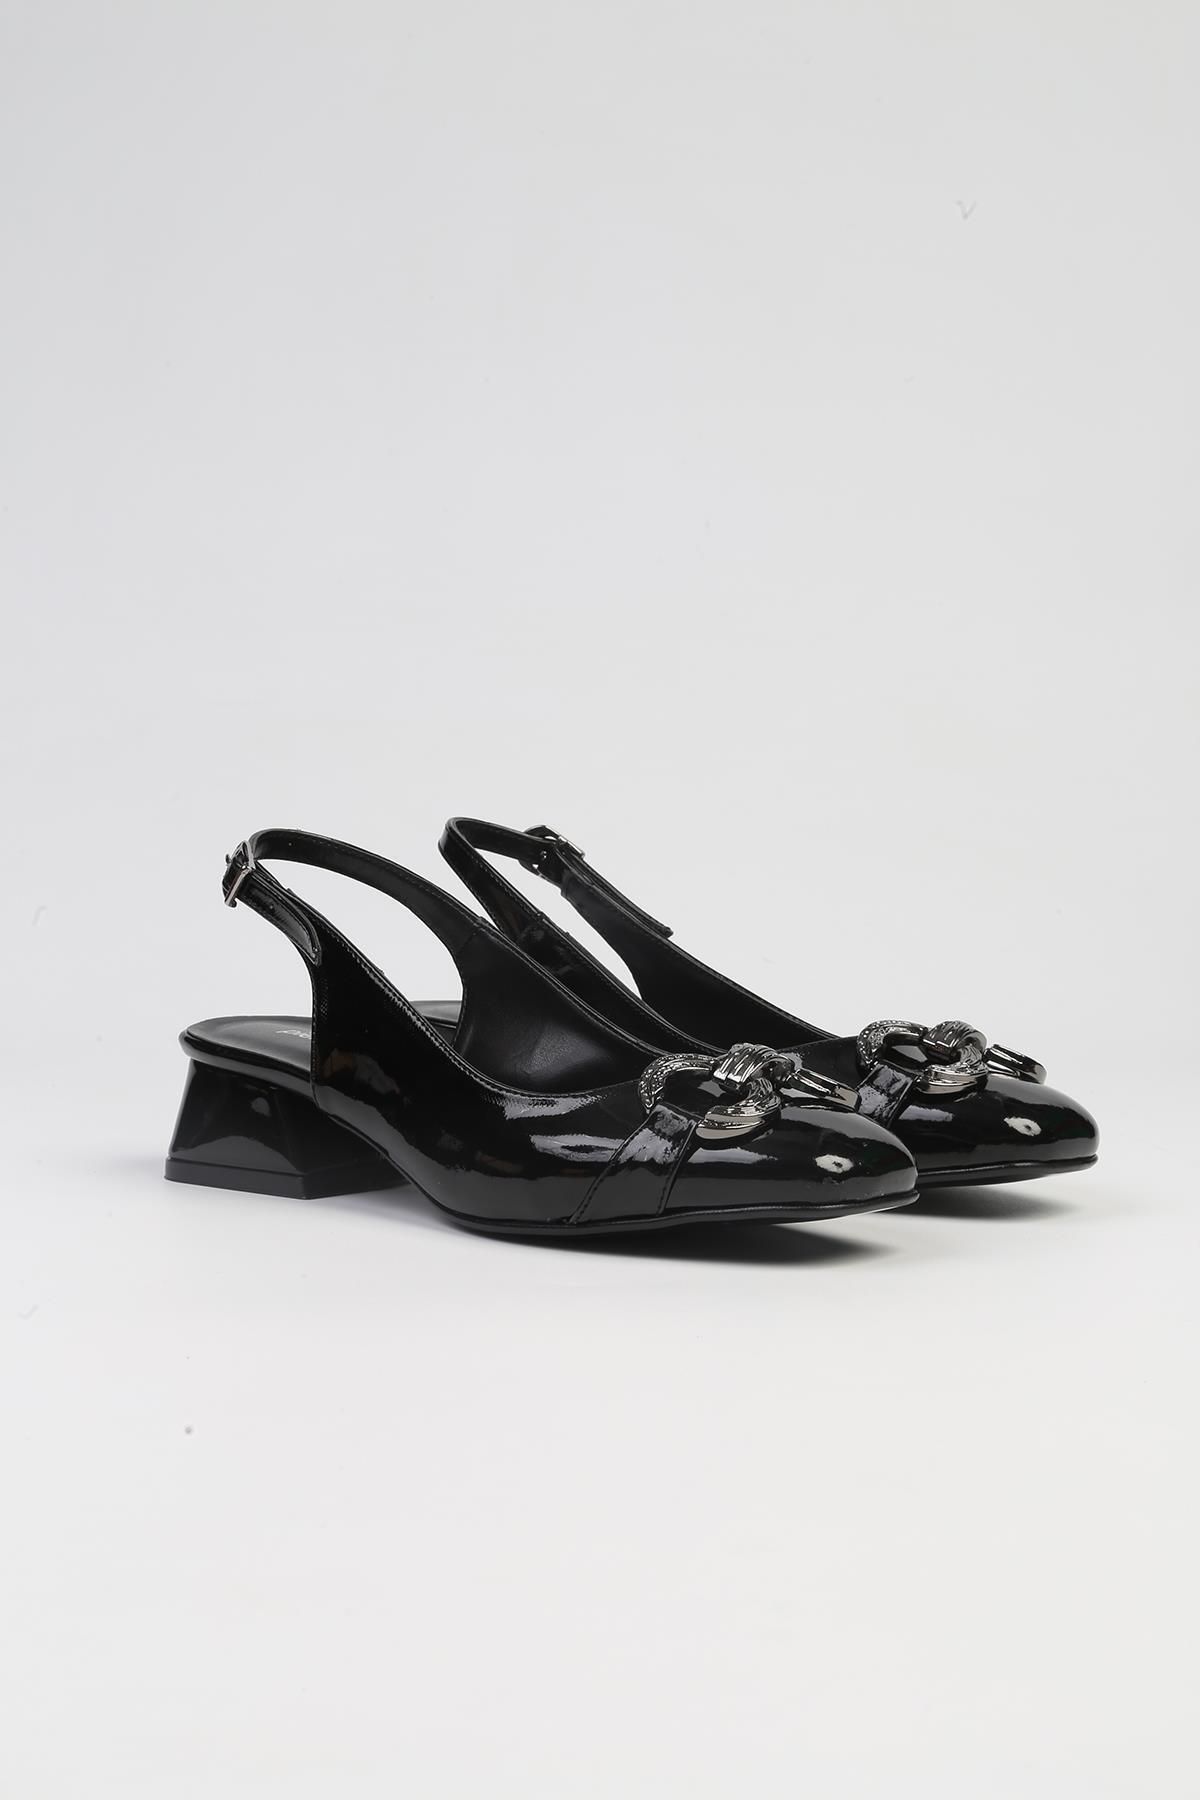 Pierre Cardin ® | PC-53029- 3341 Siyah Rugan-Kadın Kısa Topuk Ayakkabı